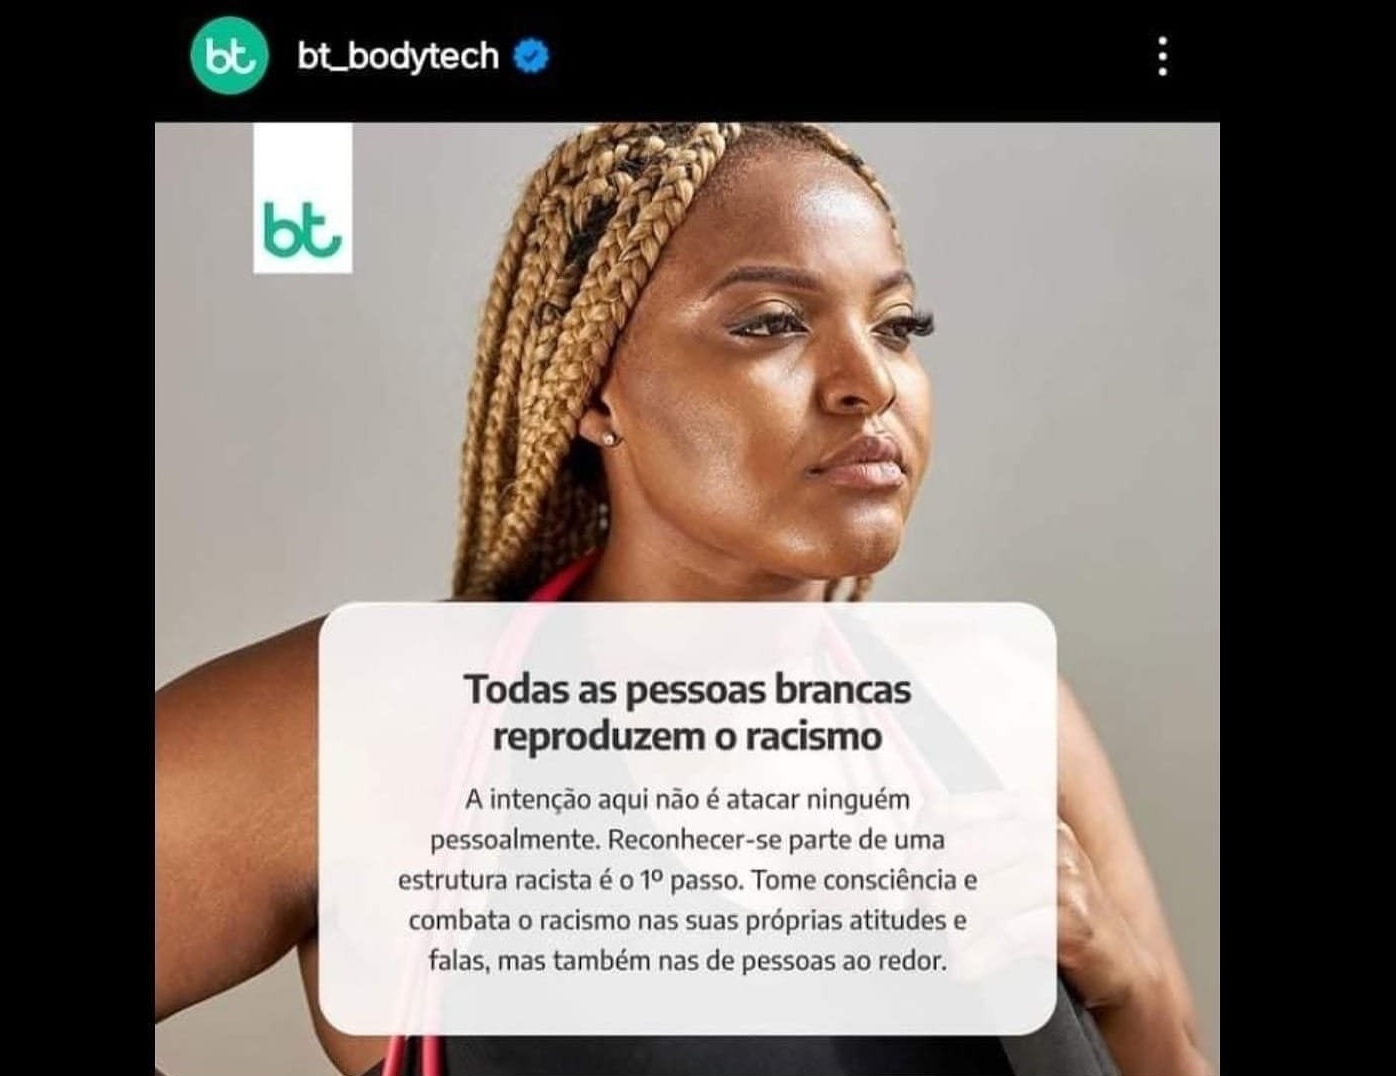 Campanha anti-racismo da BodyTech gera grande polêmica no Twitter